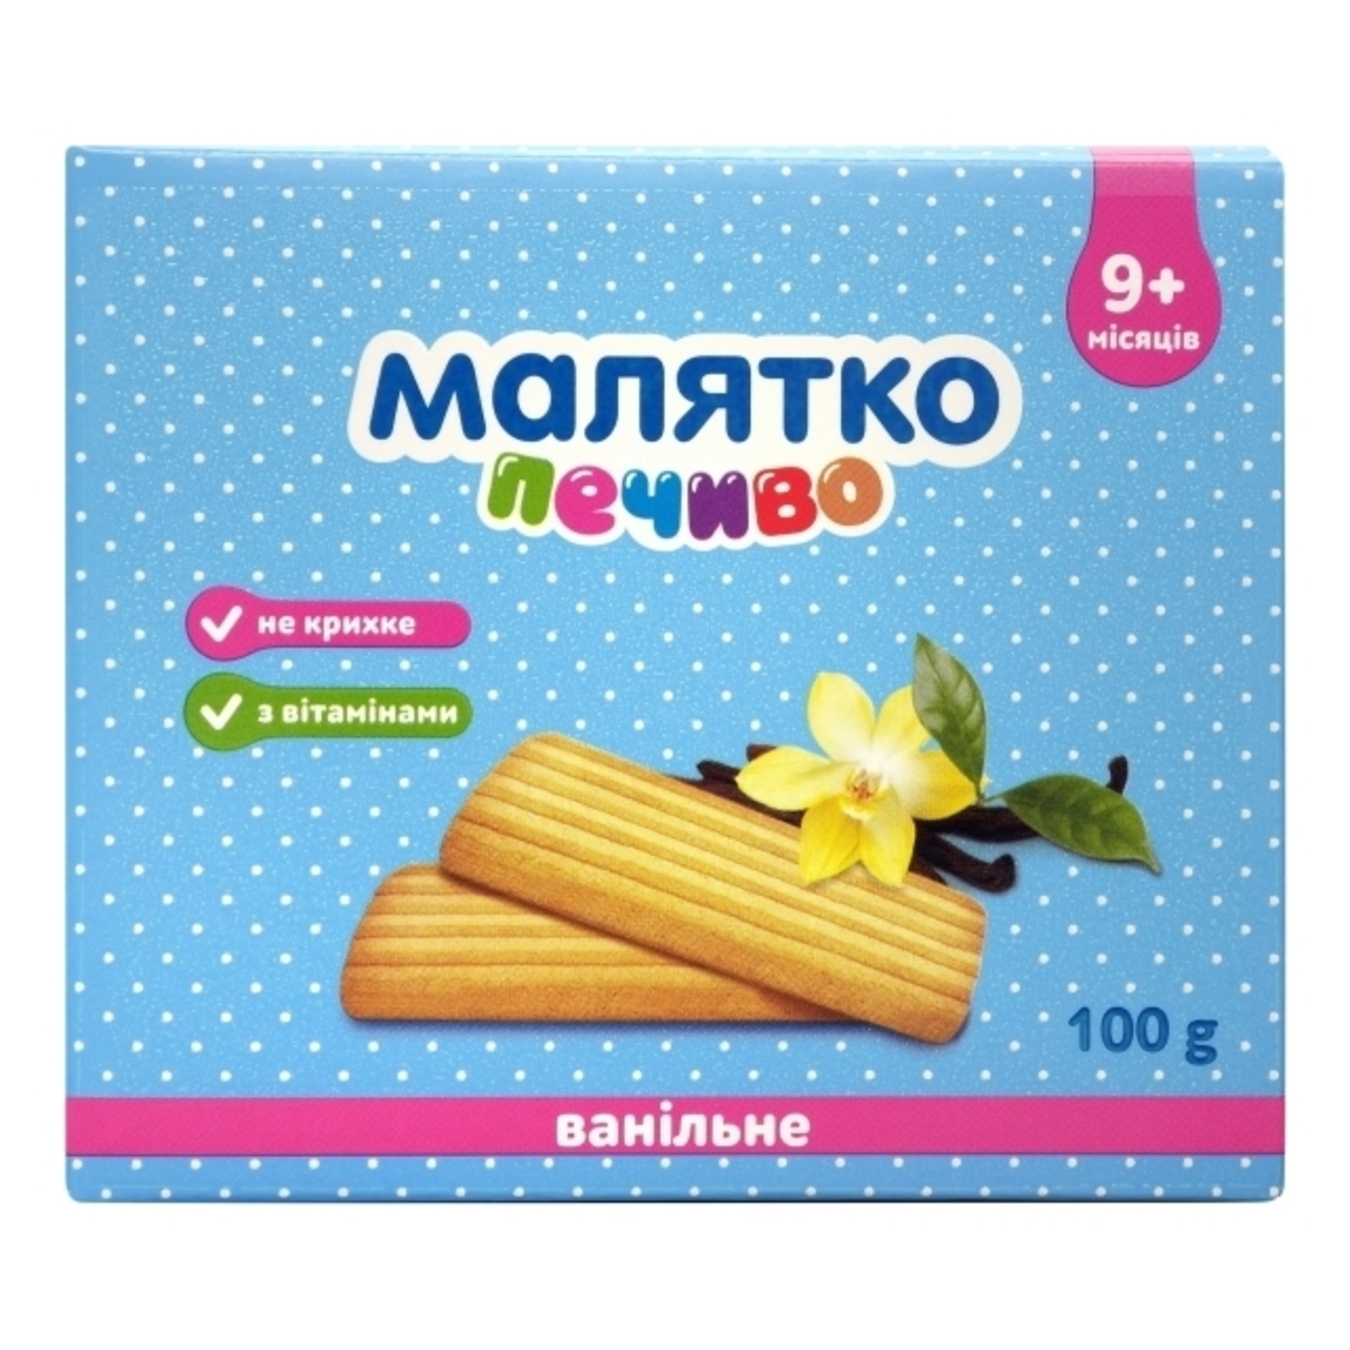 Malyatko for children from 9 months vanilla cookies 100g